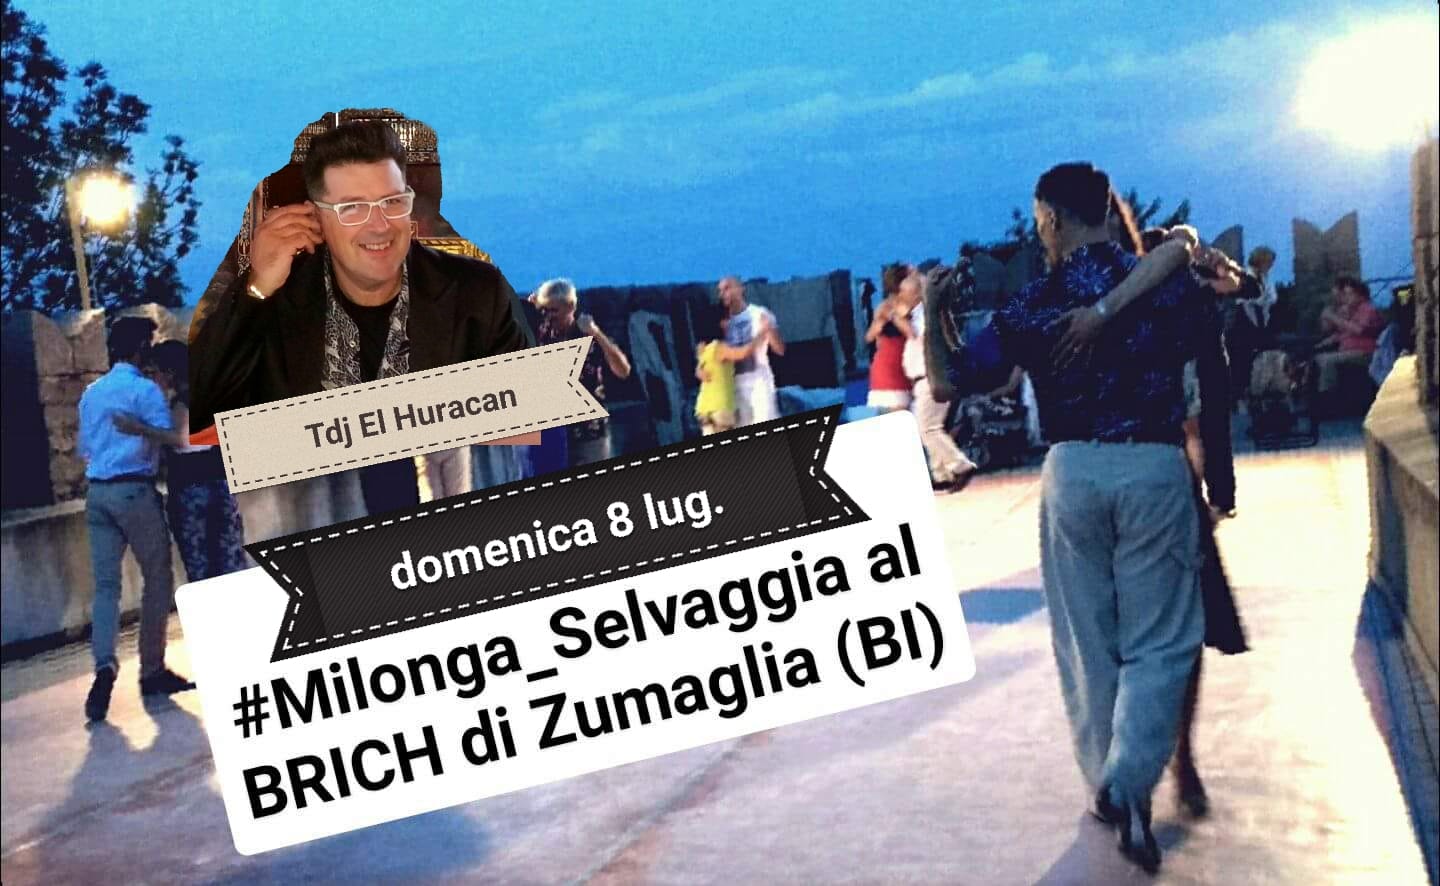 Al momento stai visualizzando Castello Brich a Zumaglia (BI) Milonga Selvaggia by Kìneos-Tango